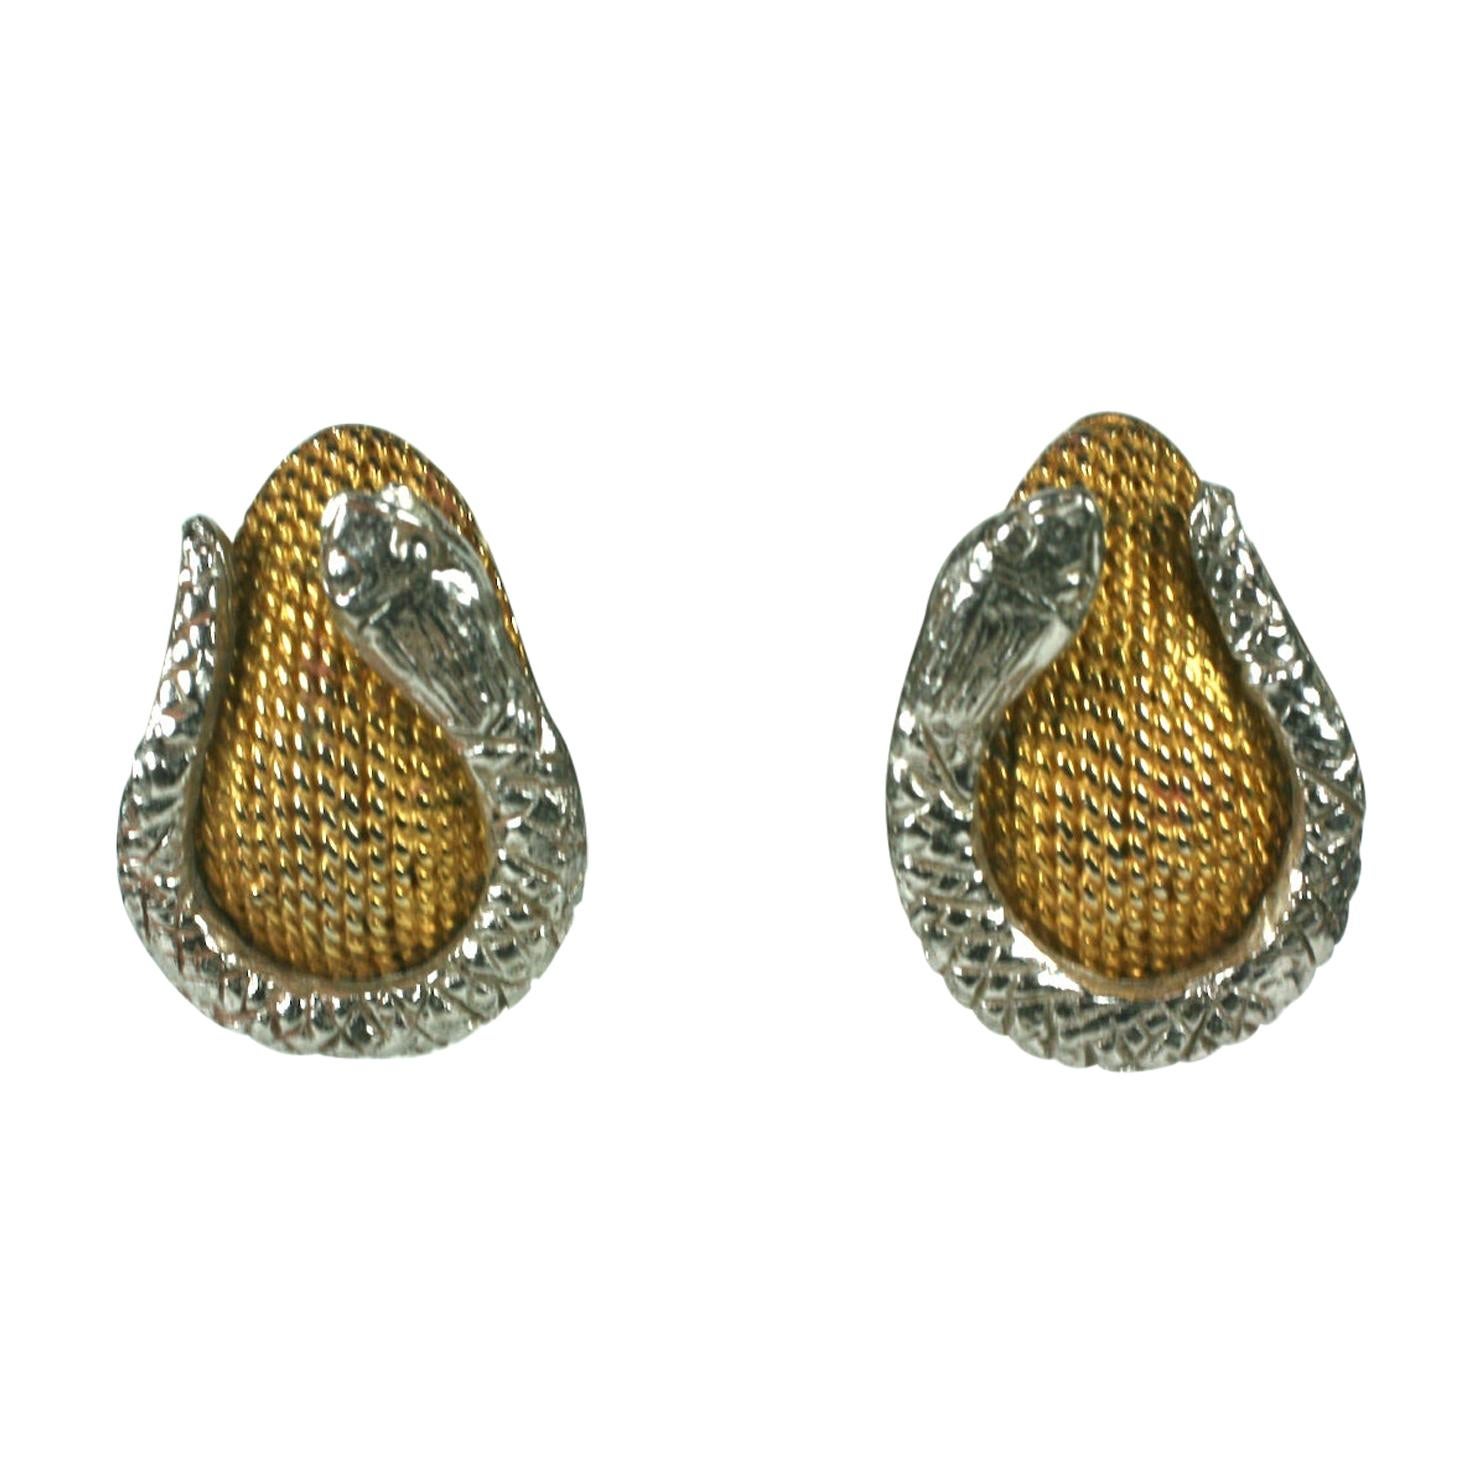 Hattie Carnegie Snake Earrings